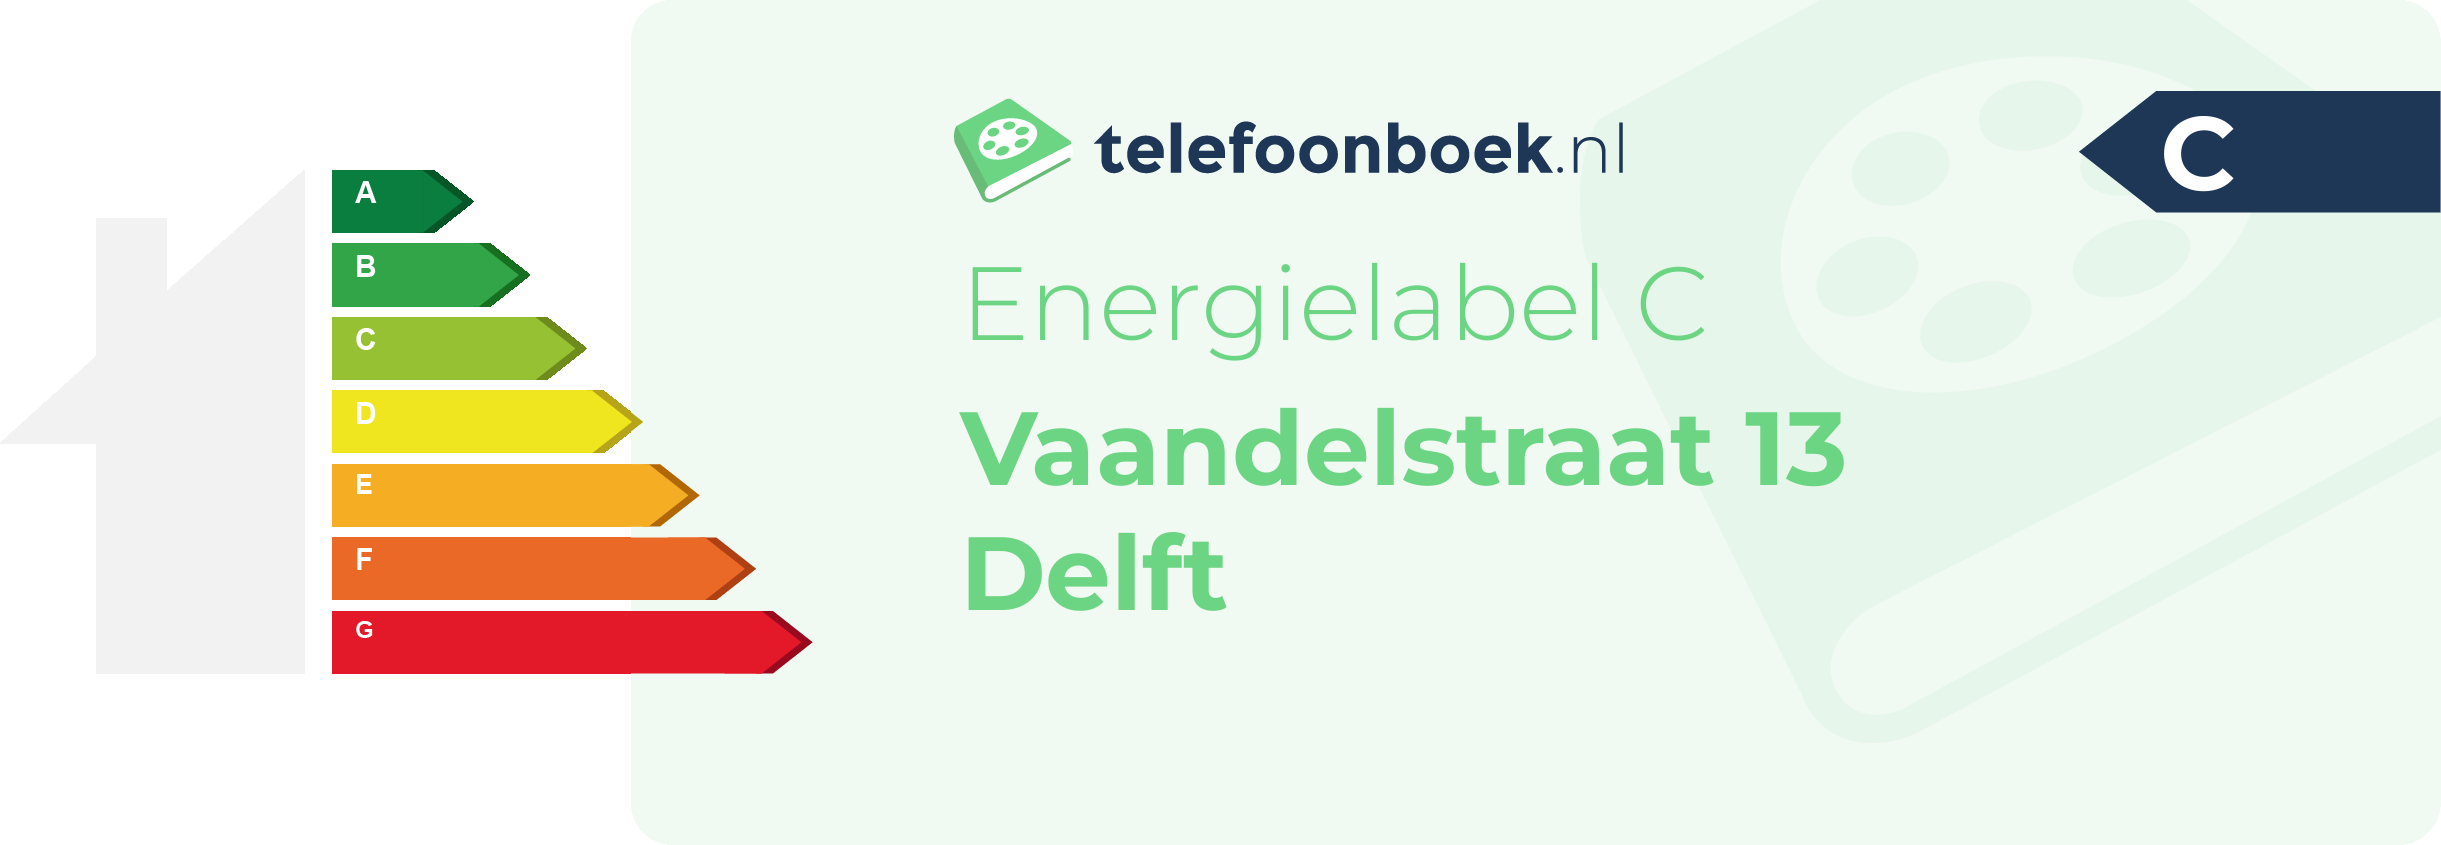 Energielabel Vaandelstraat 13 Delft